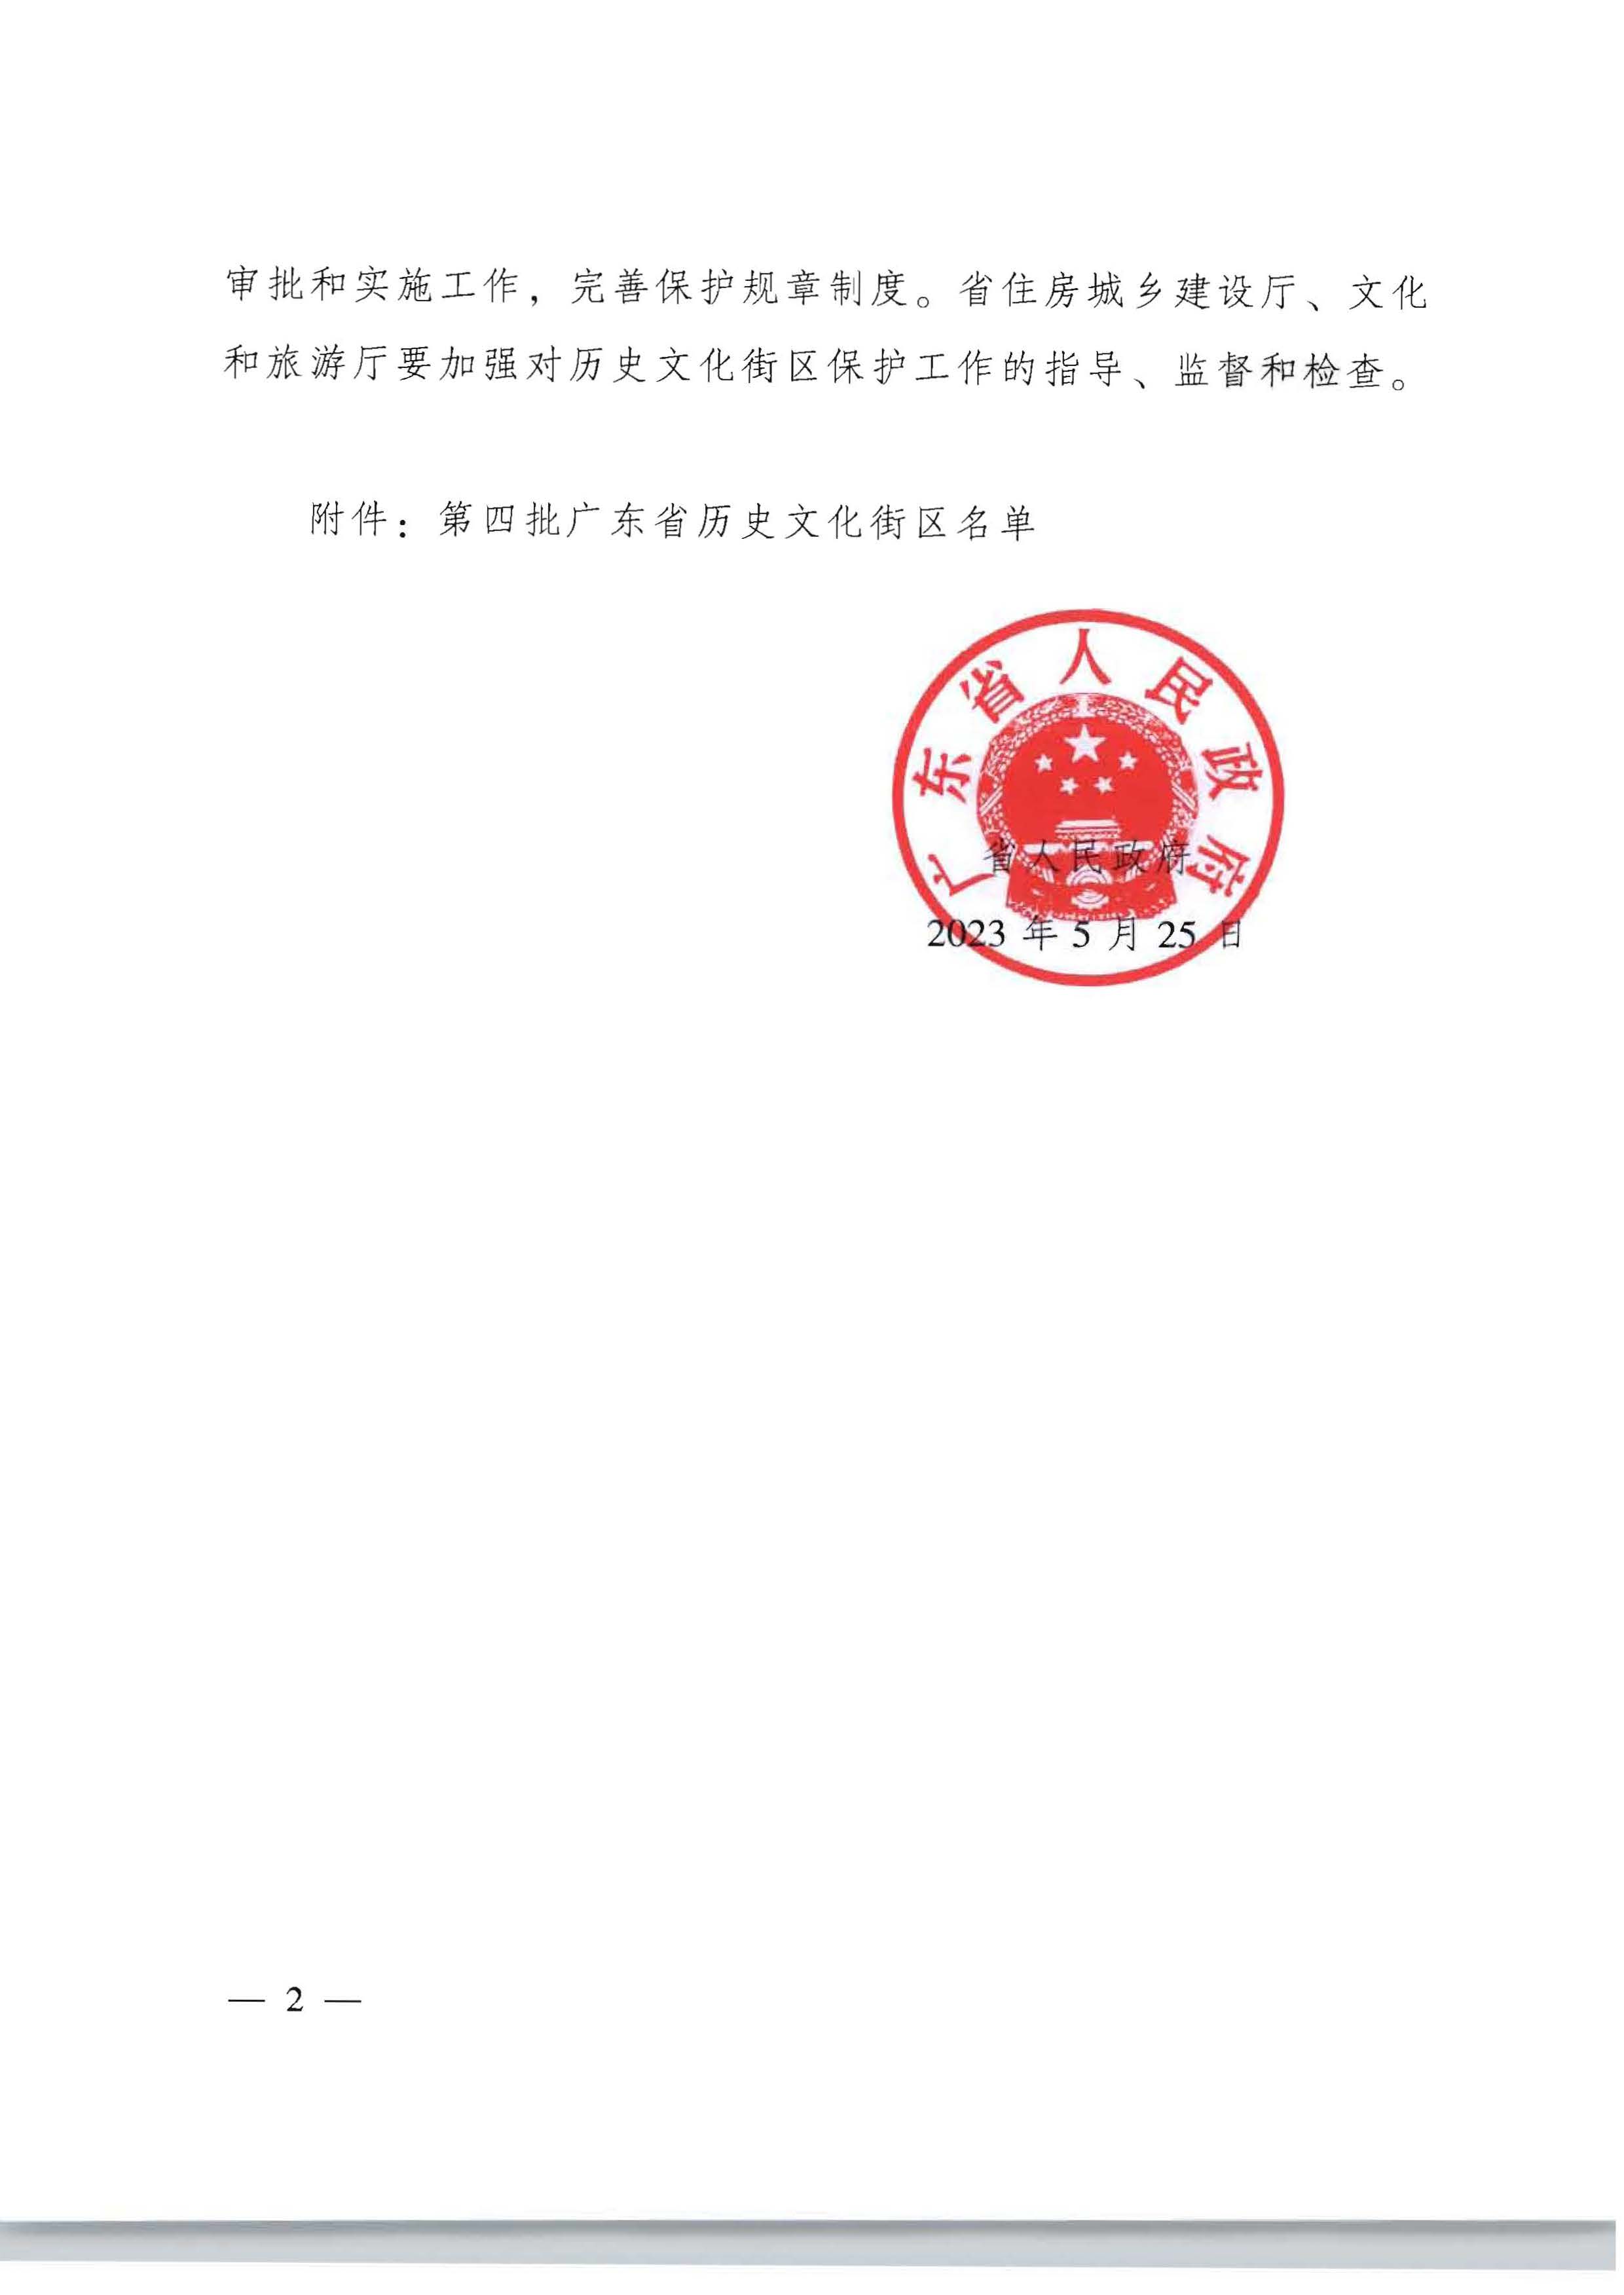 广东省人民政府关于公布第四批广东省历史文化街区名单的通知_页面_4_页面_2.jpg